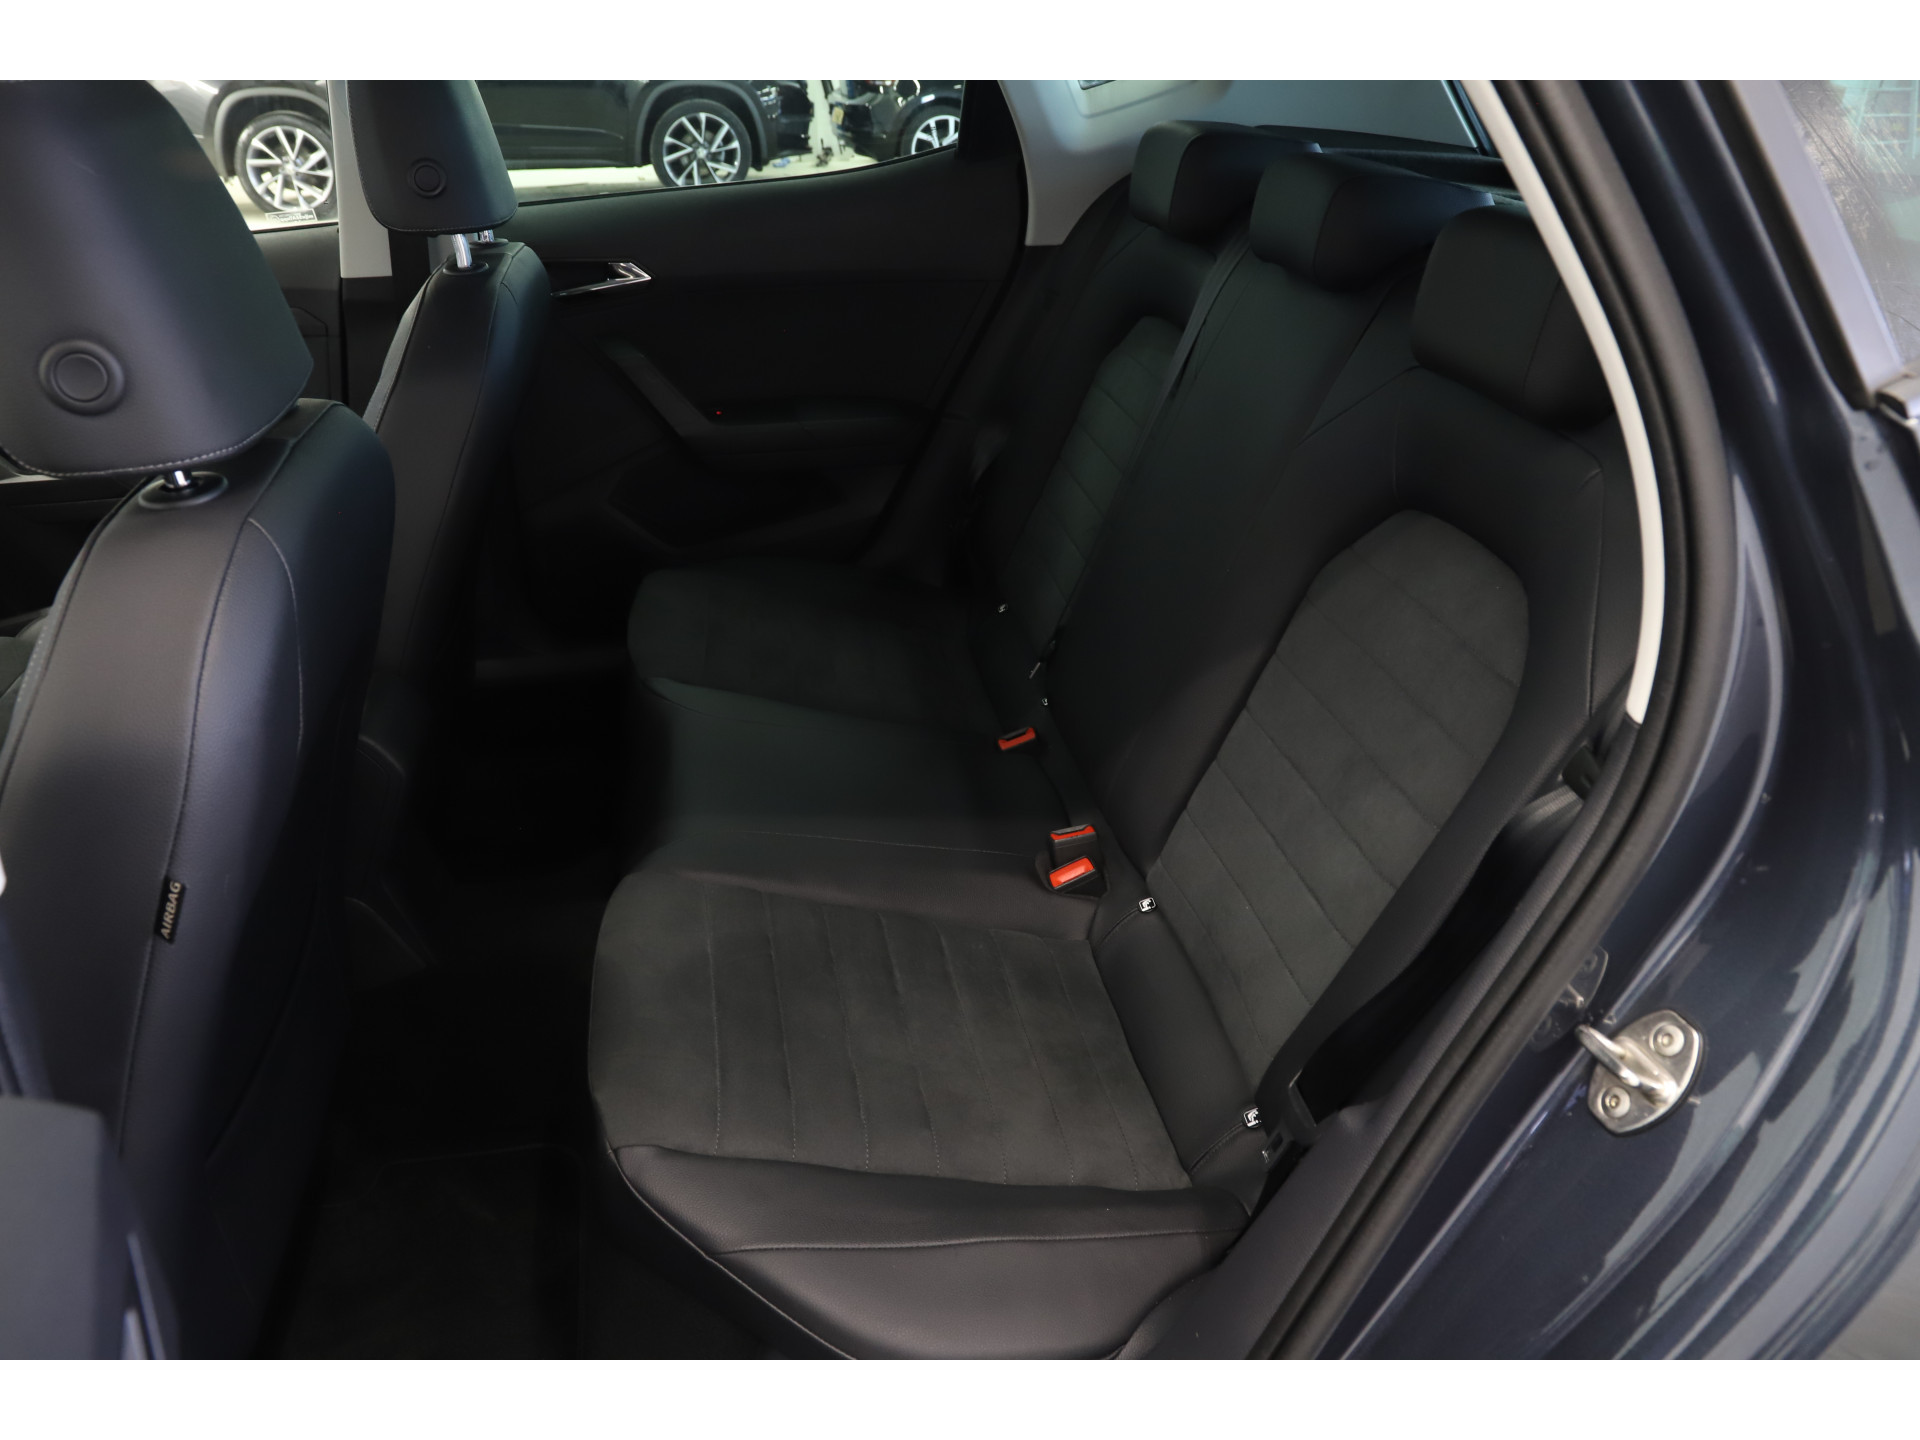 SEAT - Arona 1.0 TSI 95pk Style Business Intense - 2020